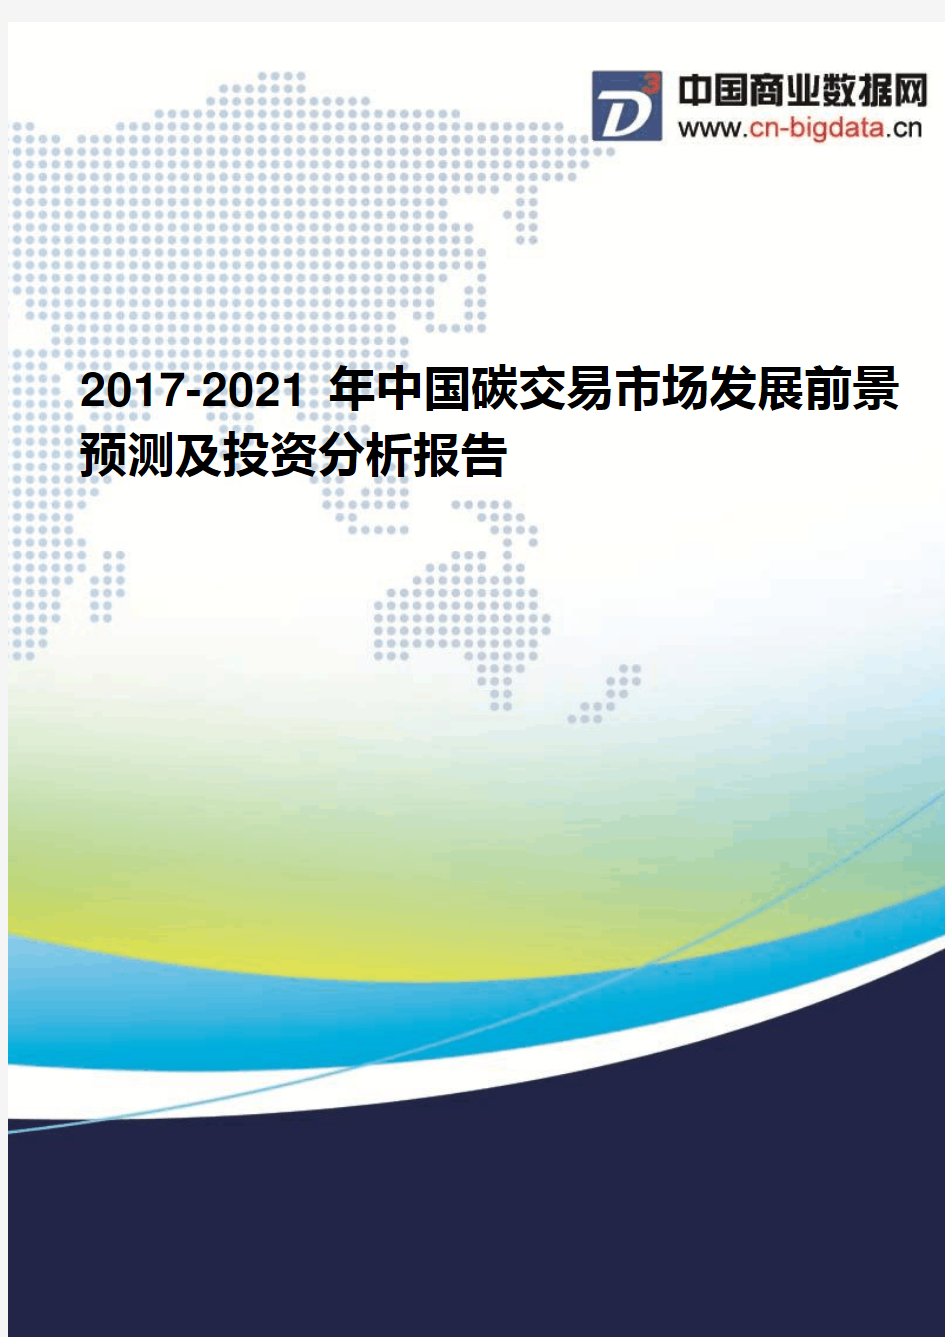 2017-2021年中国碳交易市场发展前景预测及投资分析报告(2017版目录)